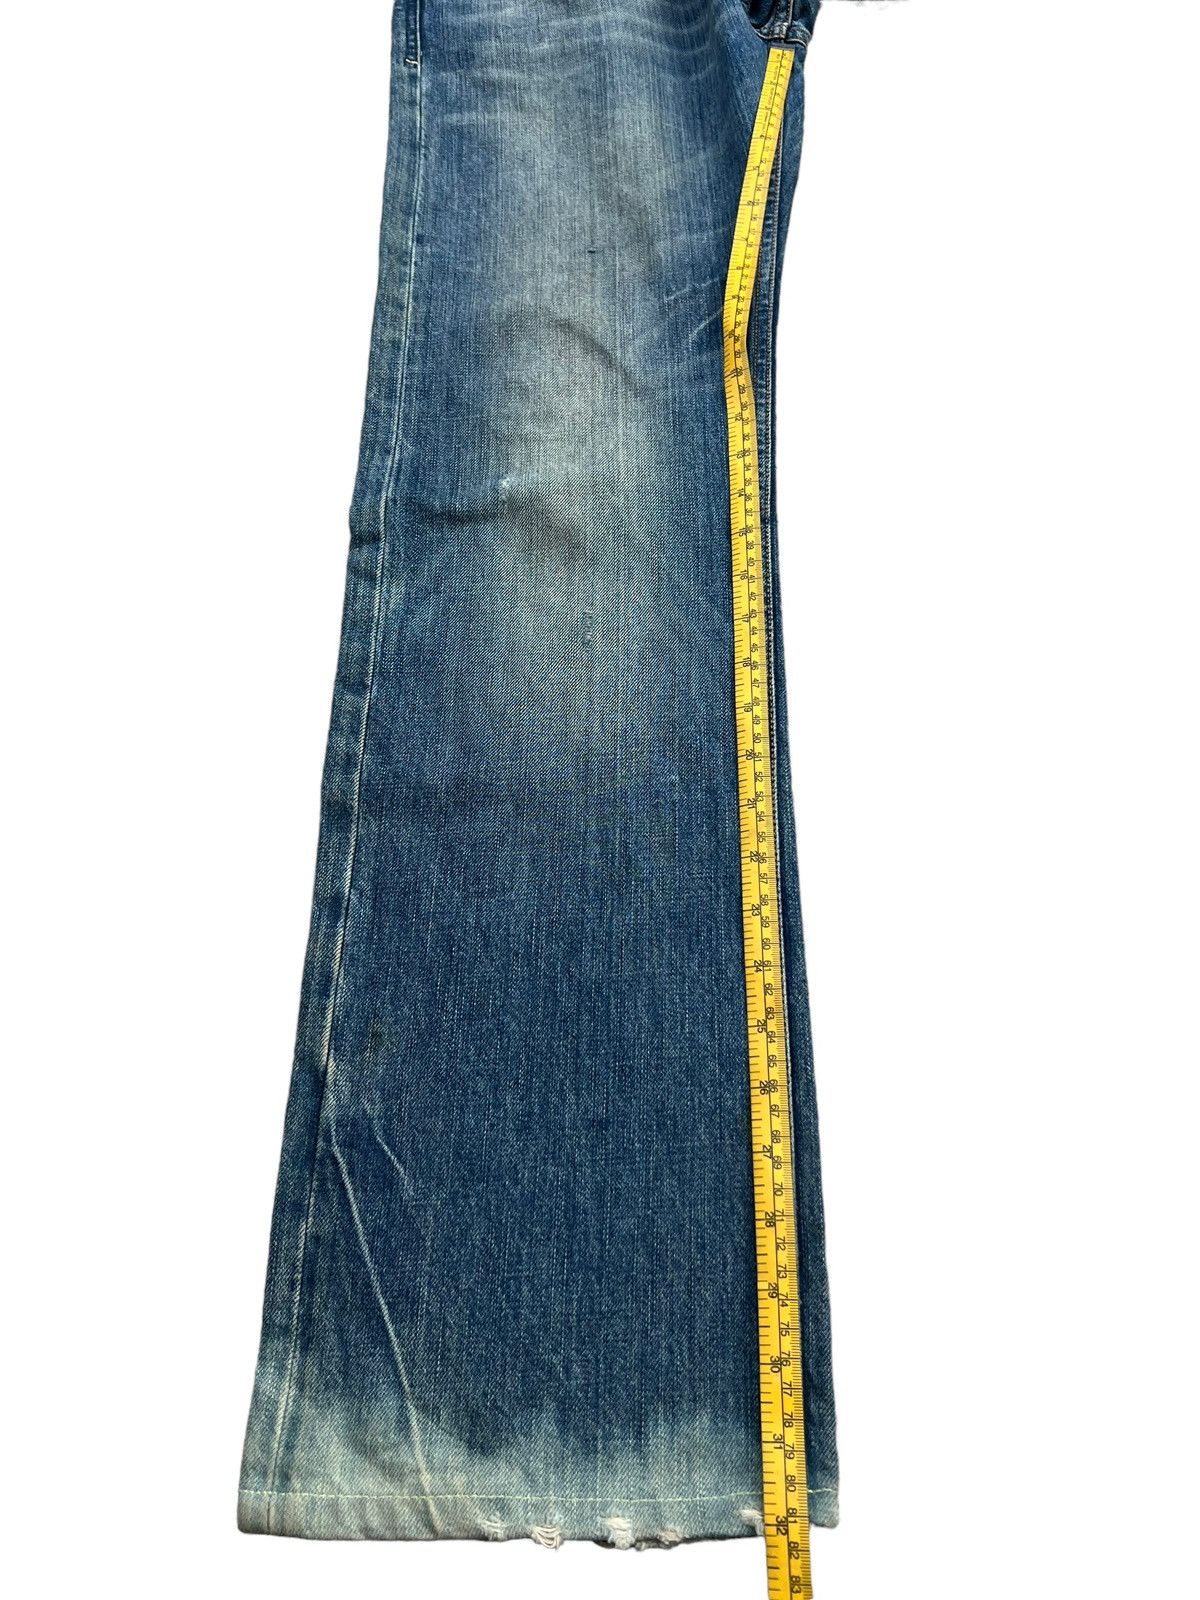 Diesel Mudwash Distressed Straightcut Denim Jeans 33x32 - 14